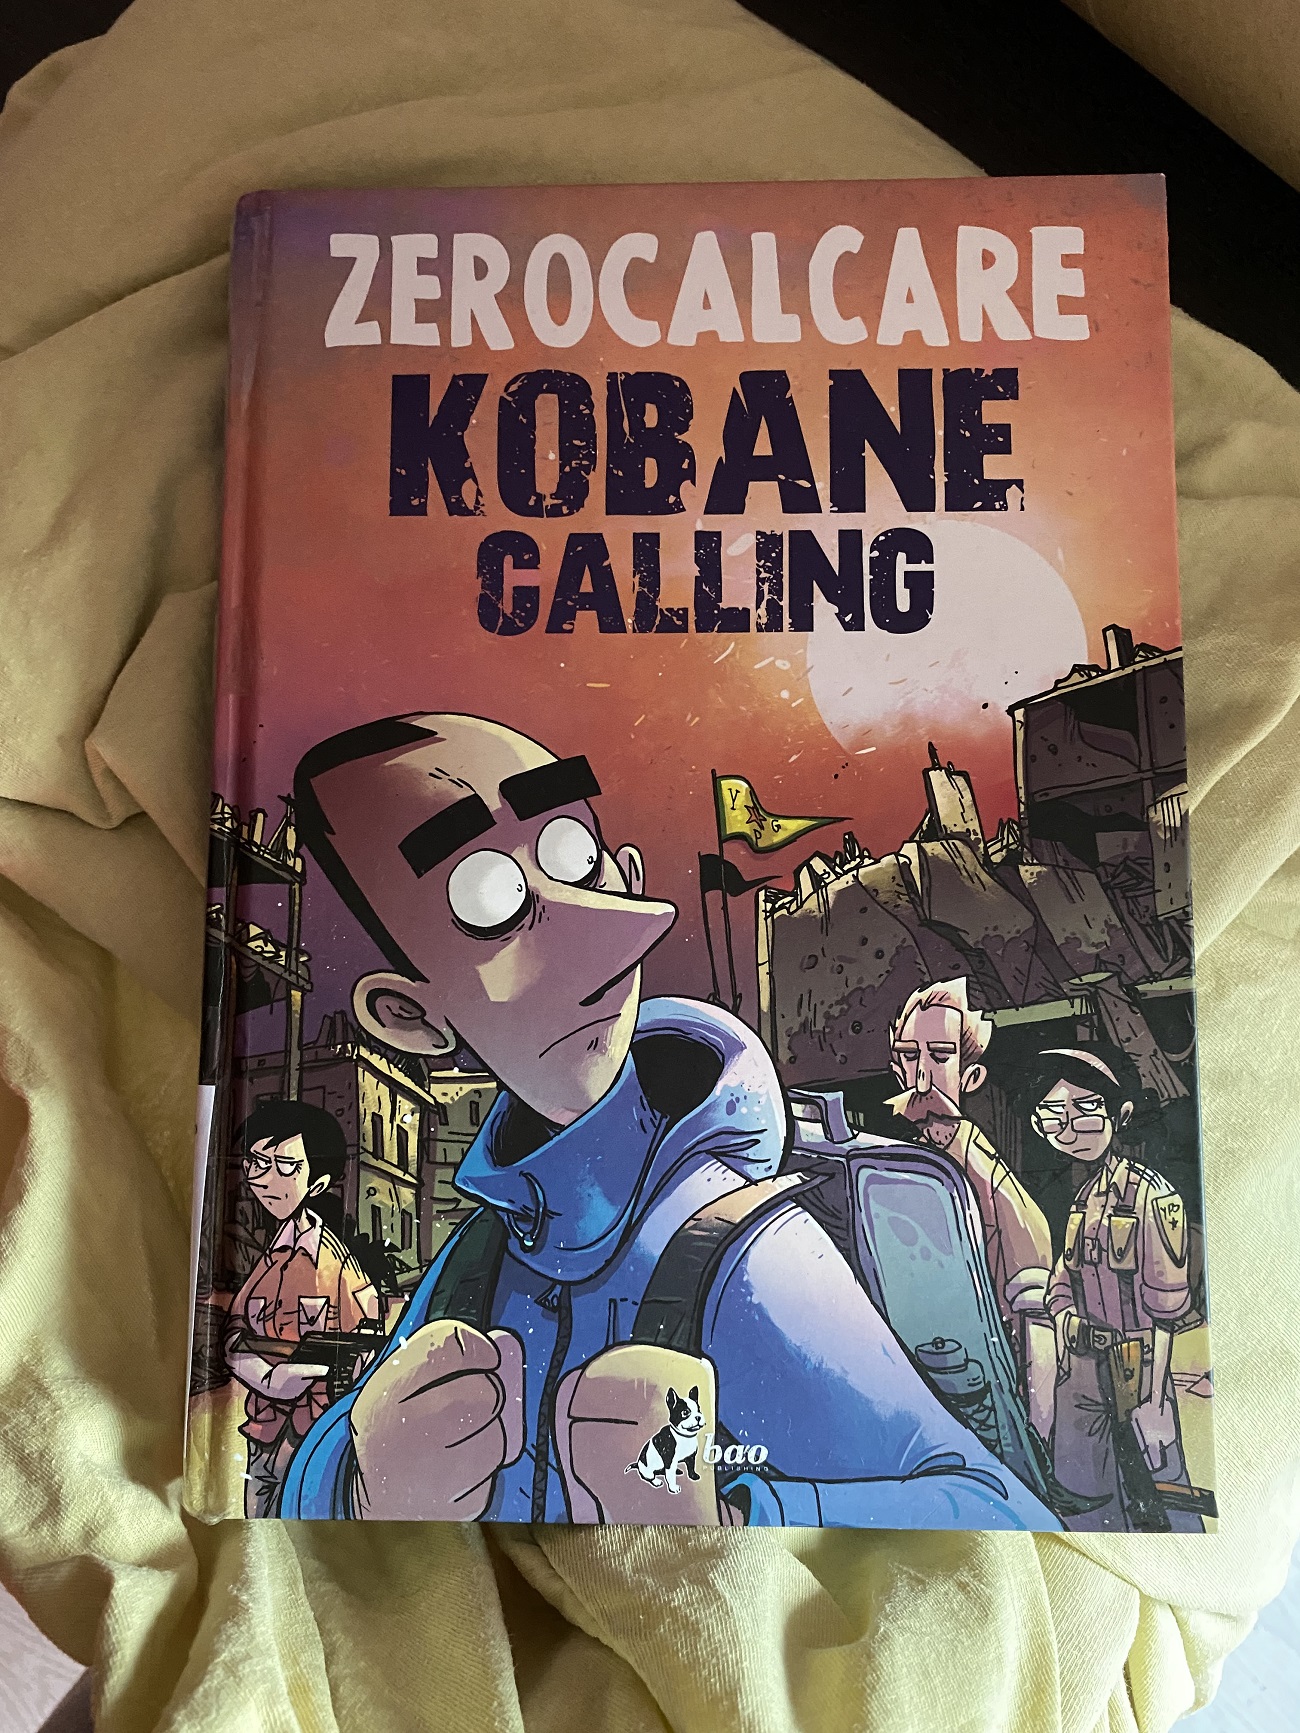 “Kobane Calling” – Zerocalcare